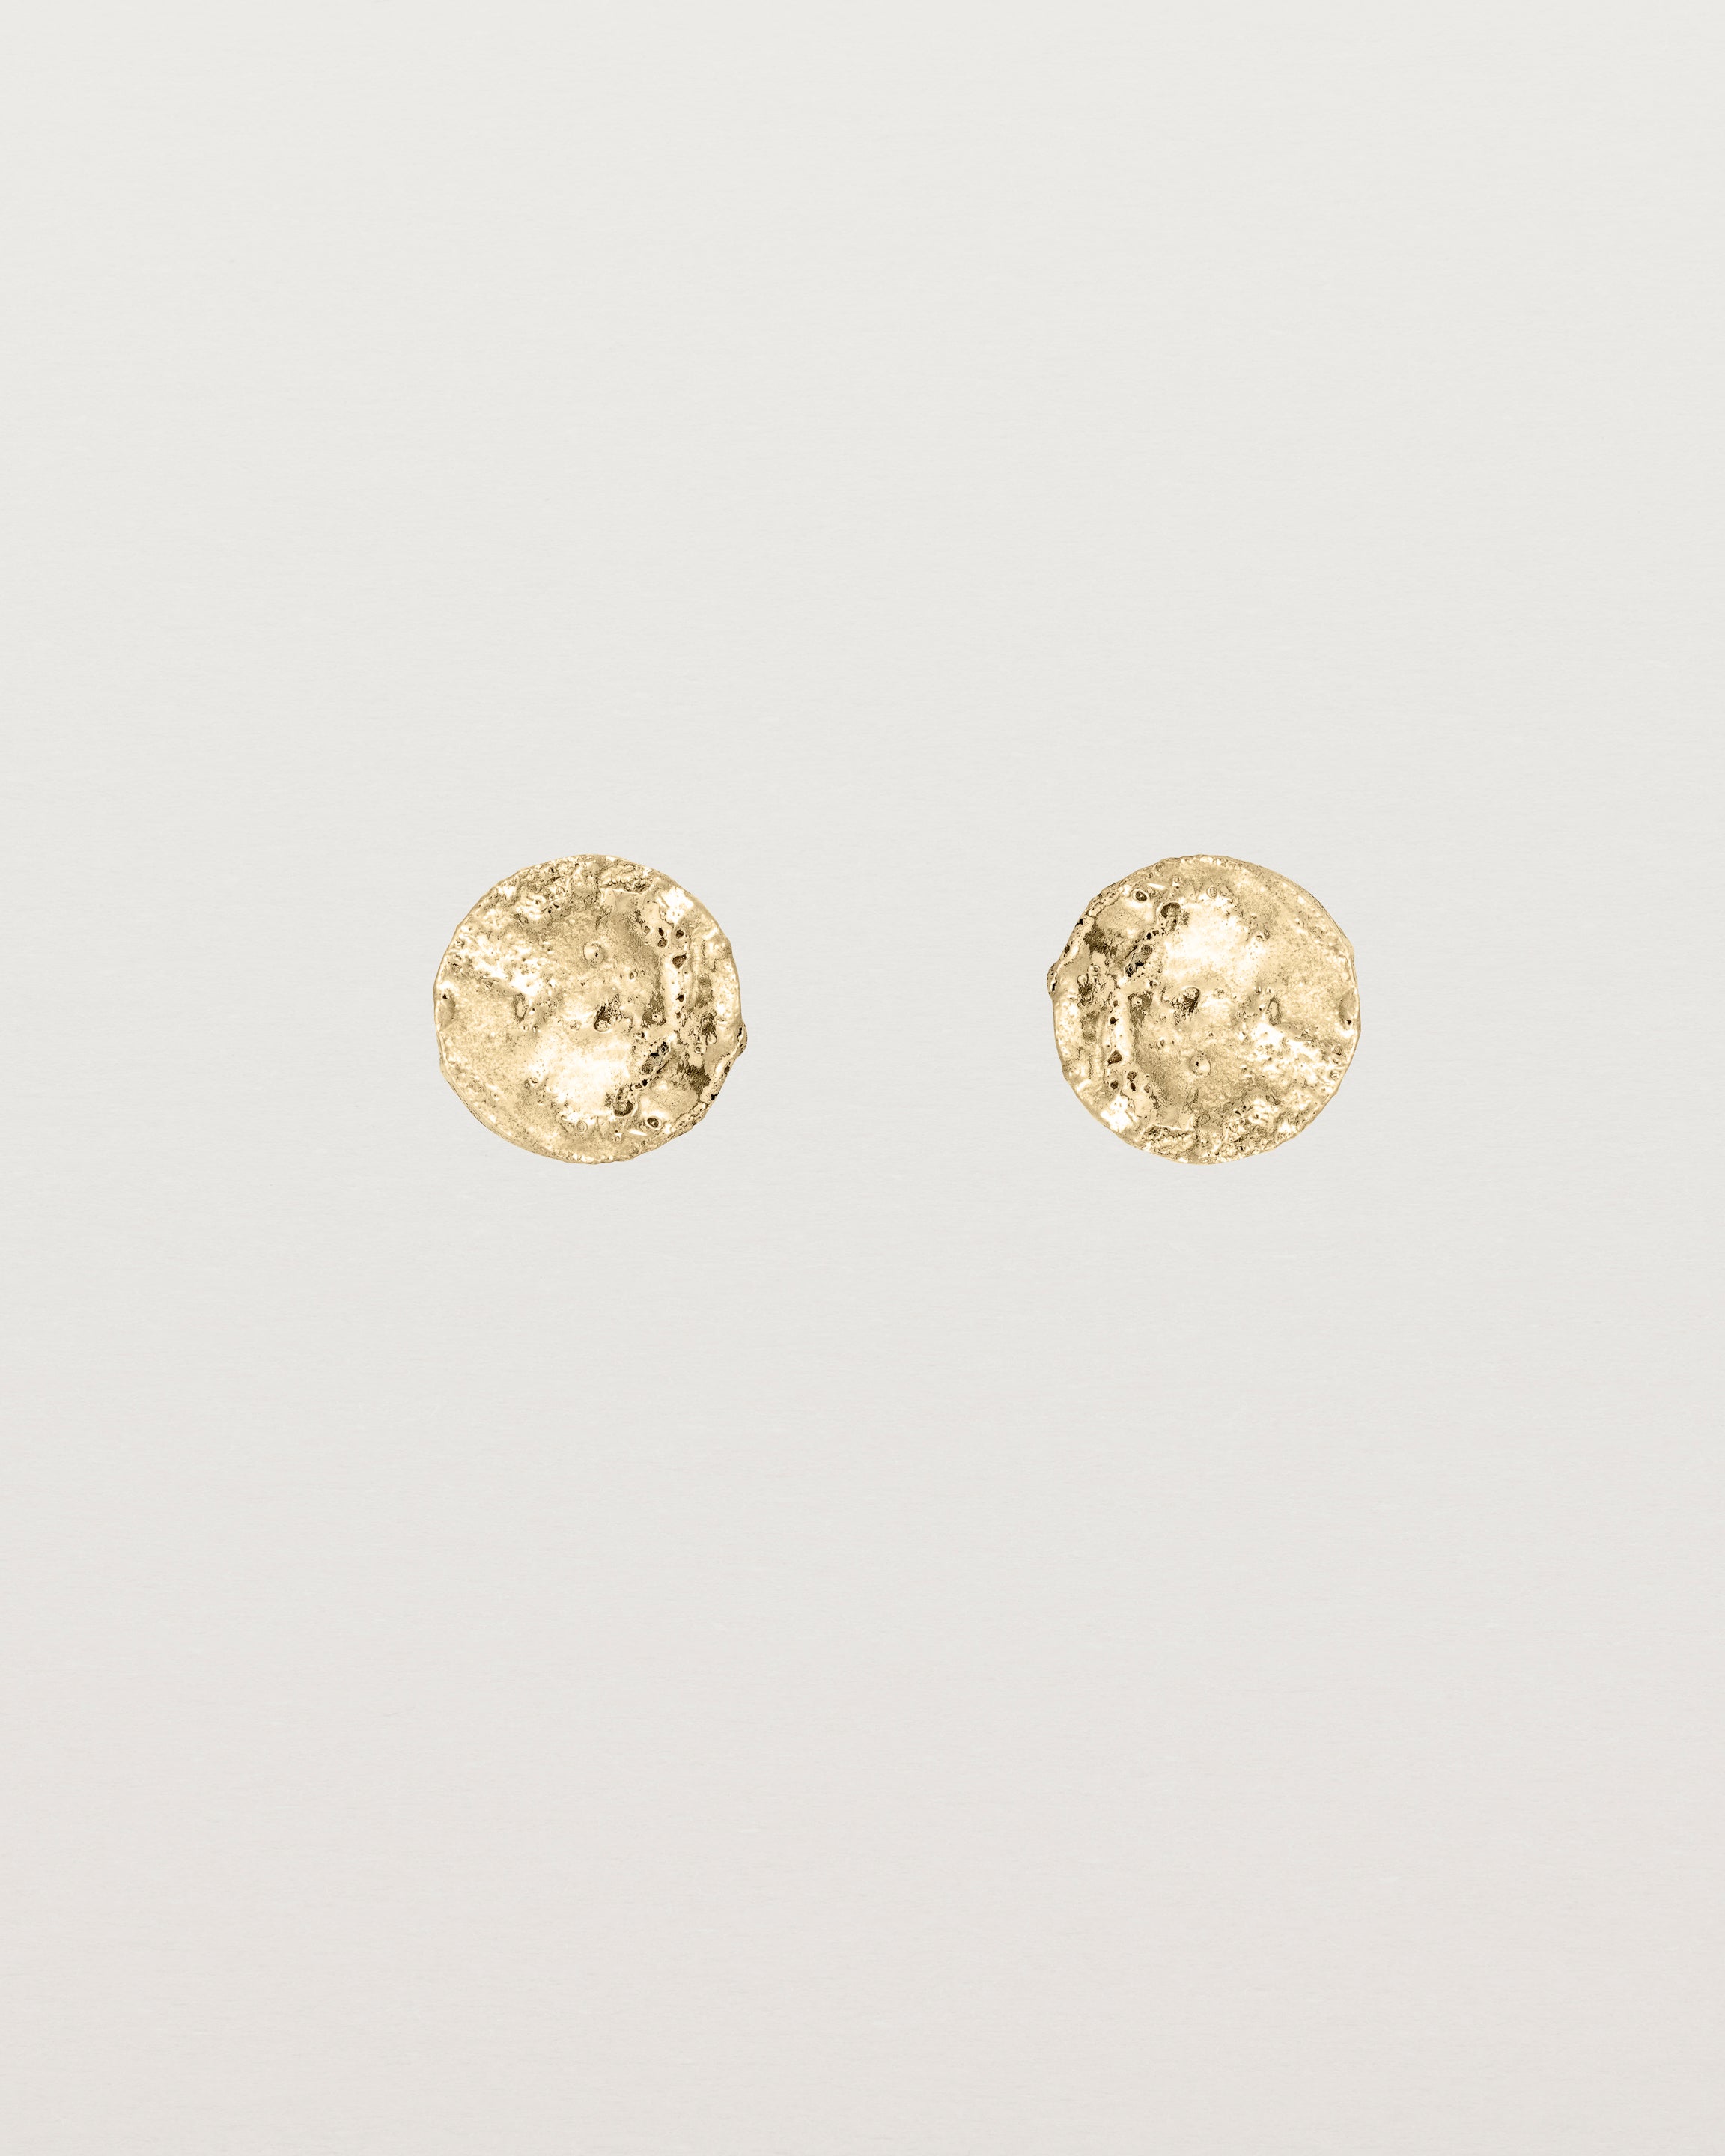 A pair of textured circular yellow gold studs